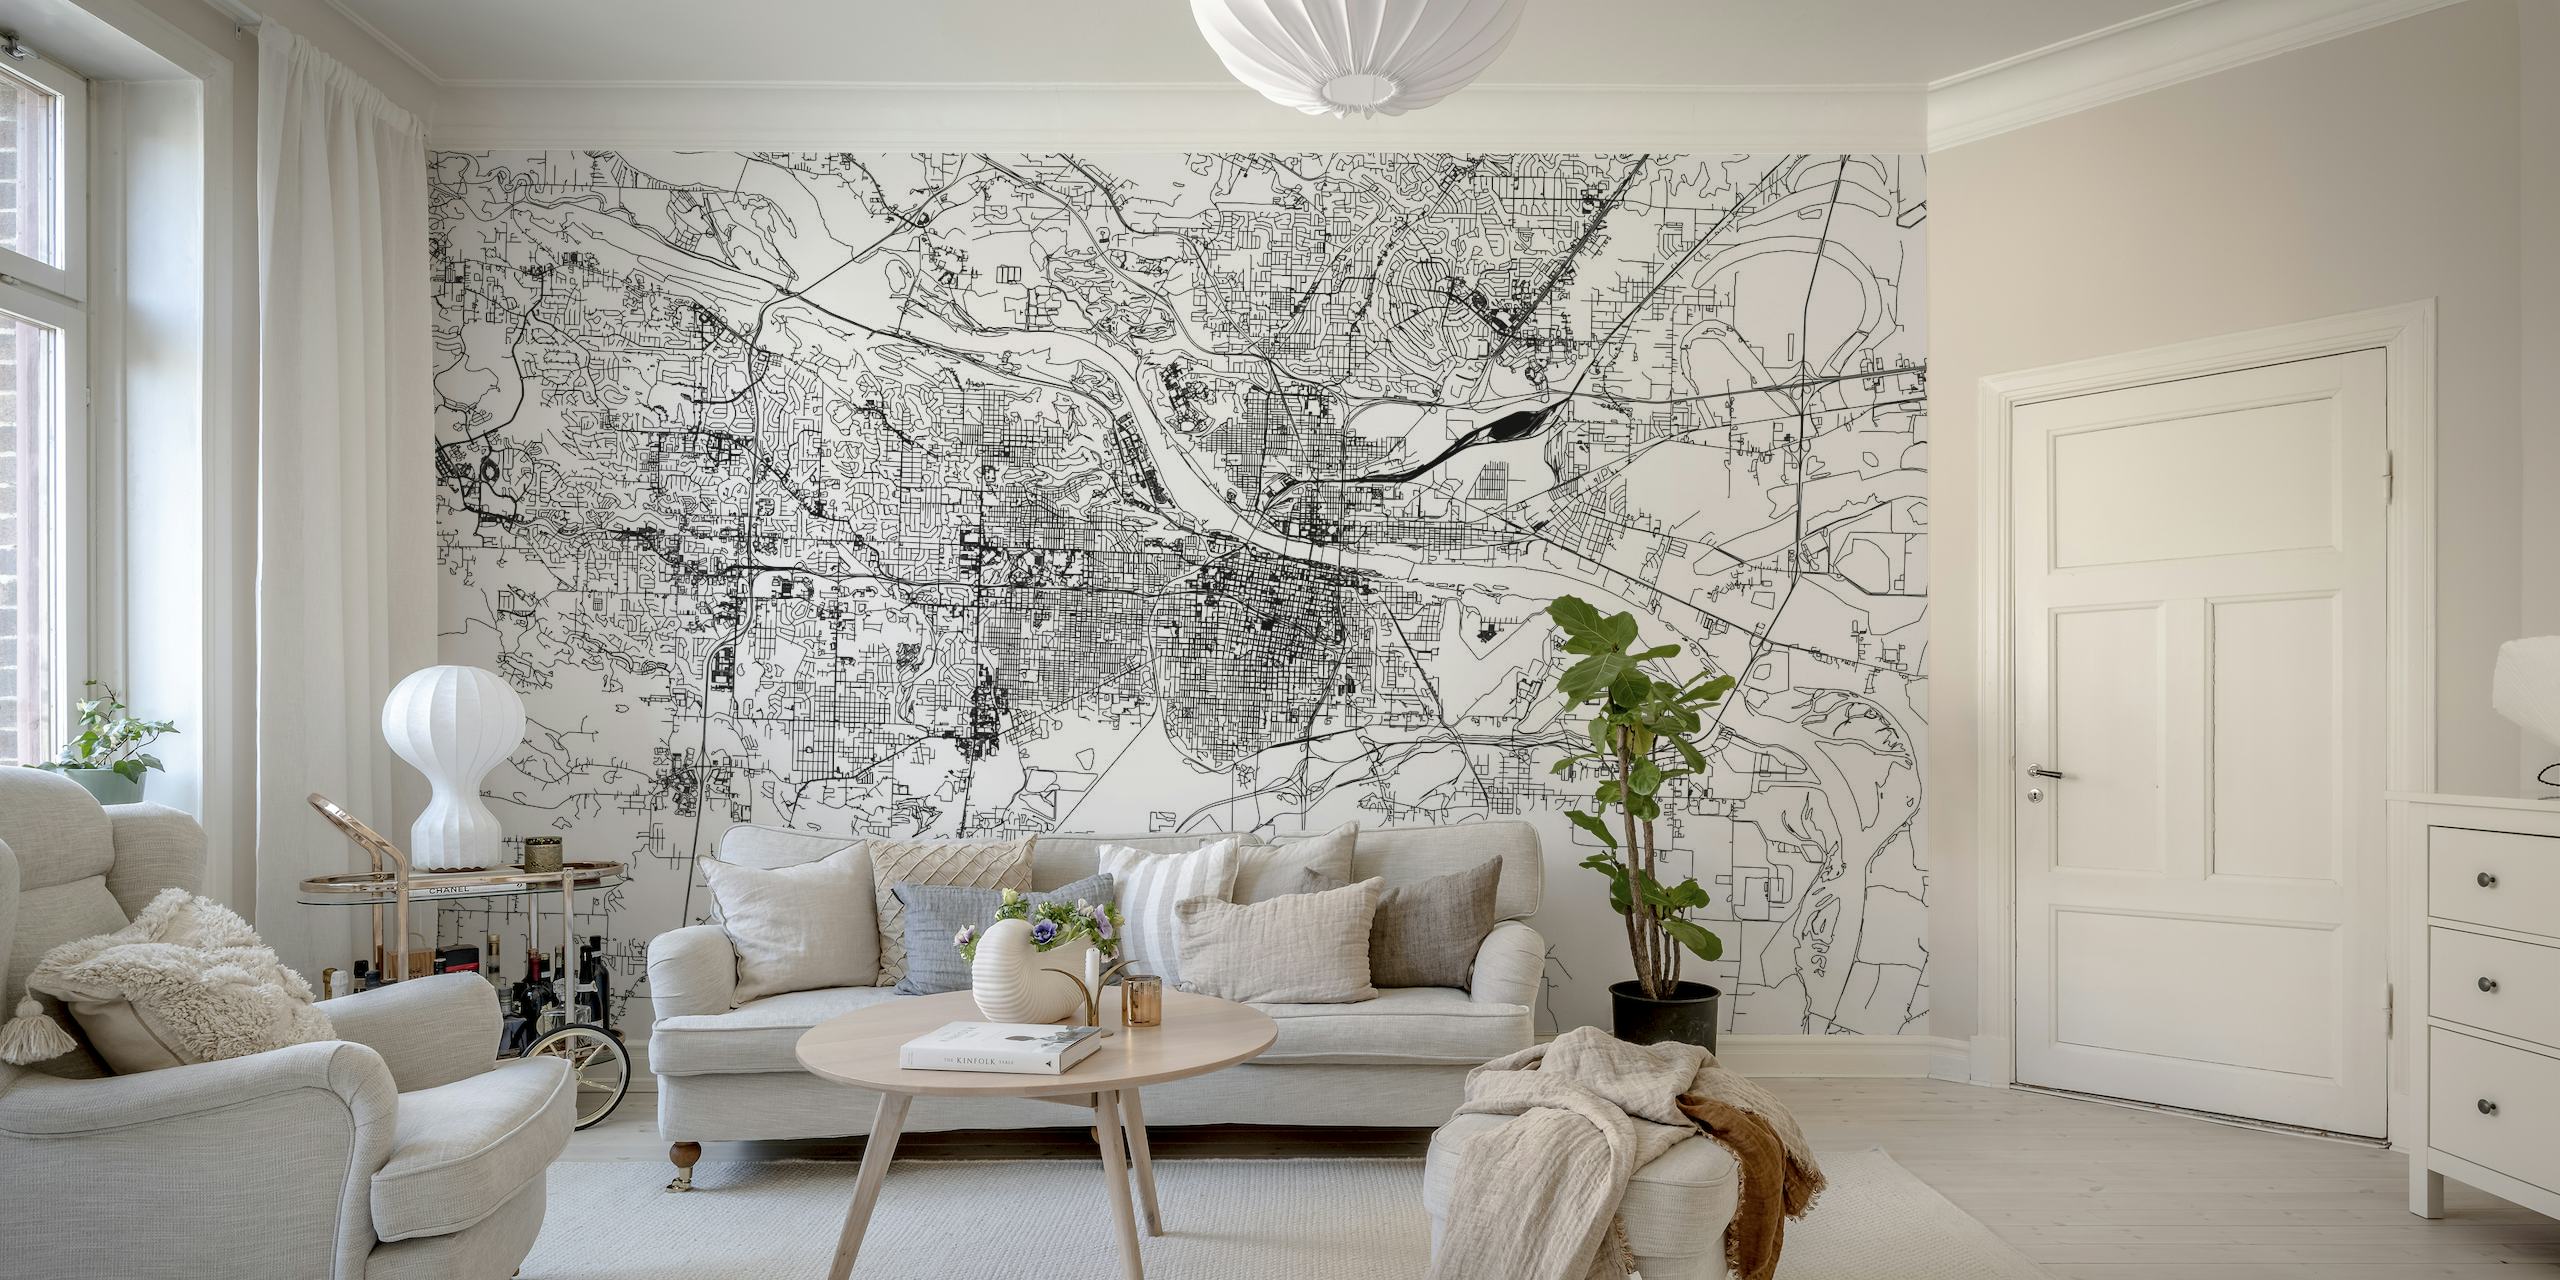 Mural monocromático do mapa de Little Rock com layout detalhado das ruas